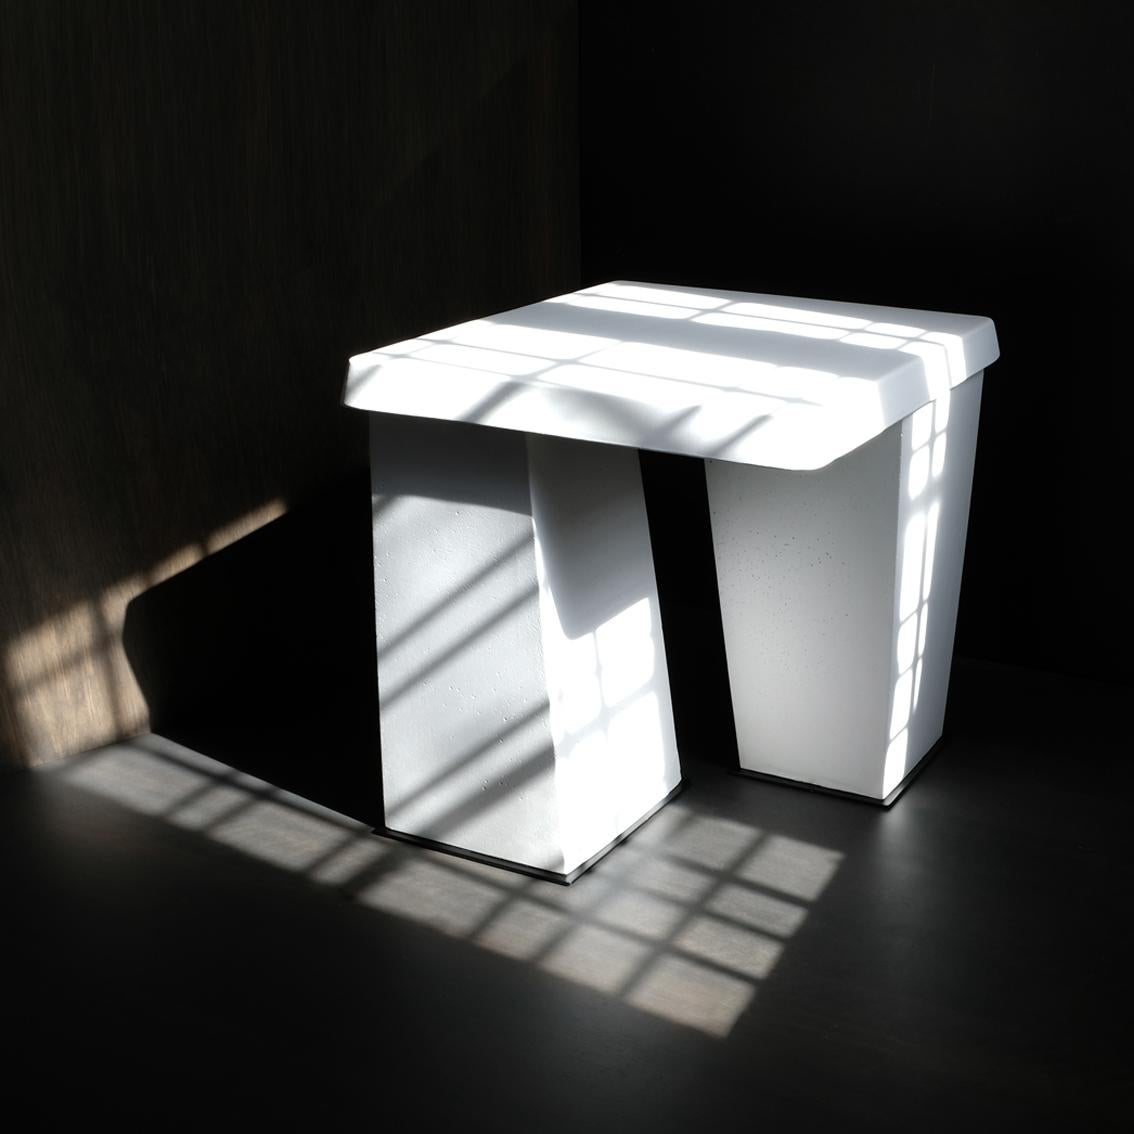 Der FRANC-Tisch, eines unserer Lieblingsstücke, gleicht einem in der Zeit eingefrorenen Schritt. Seine Form und Proportionen erinnern an die Werte des Kubismus, indem sie Minimalismus und Funktion verbinden. Als Teil unserer Monomaterial-Studie